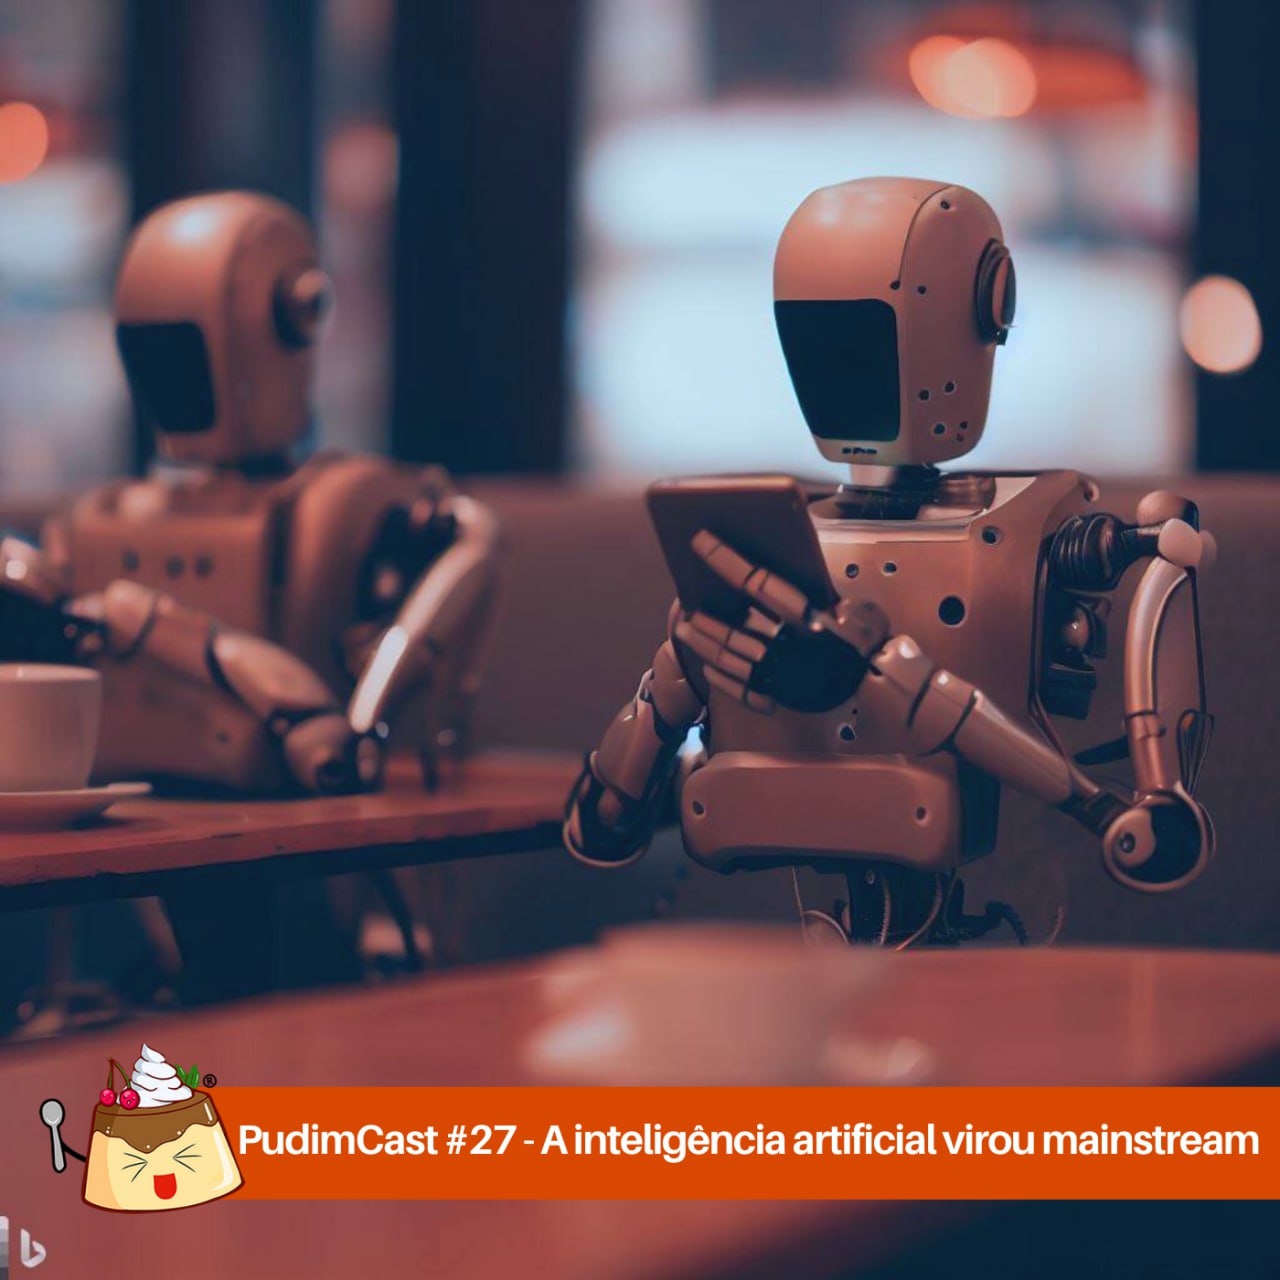 PudimCast #27 – A inteligência artificial virou mainstream